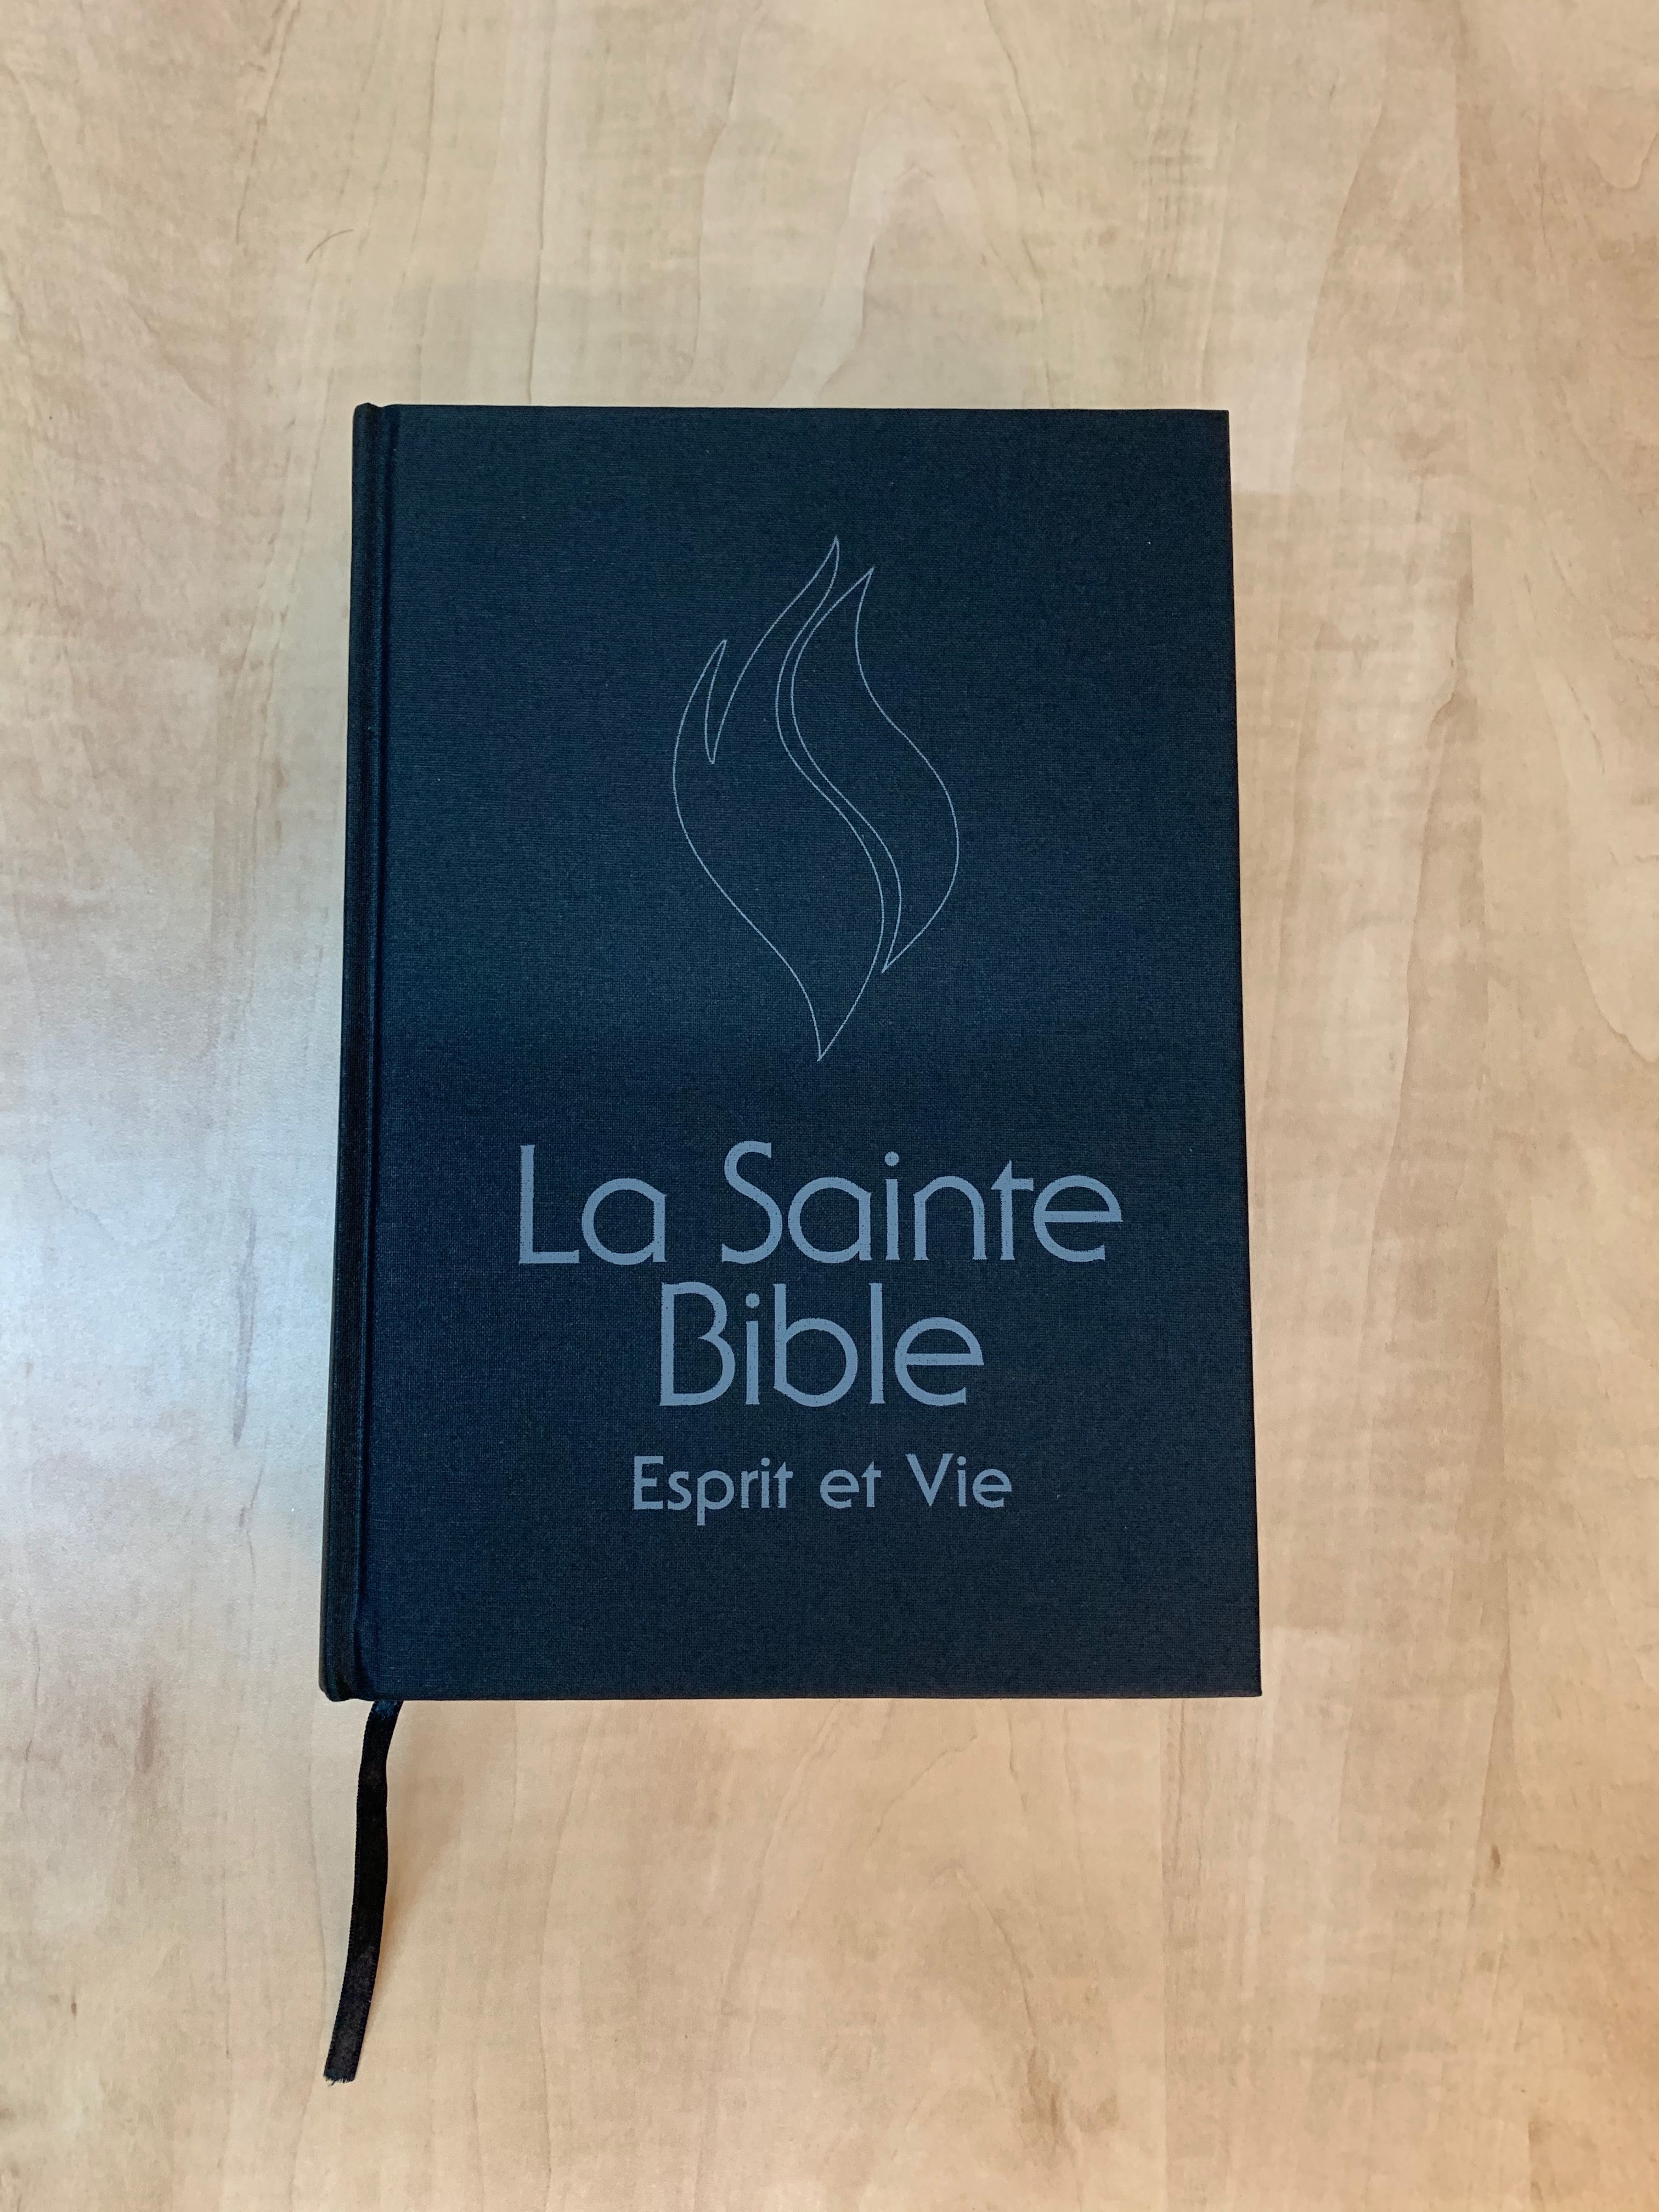 Bible Esprit et Vie couverture rigide noir - Boutique iNSPIRATION